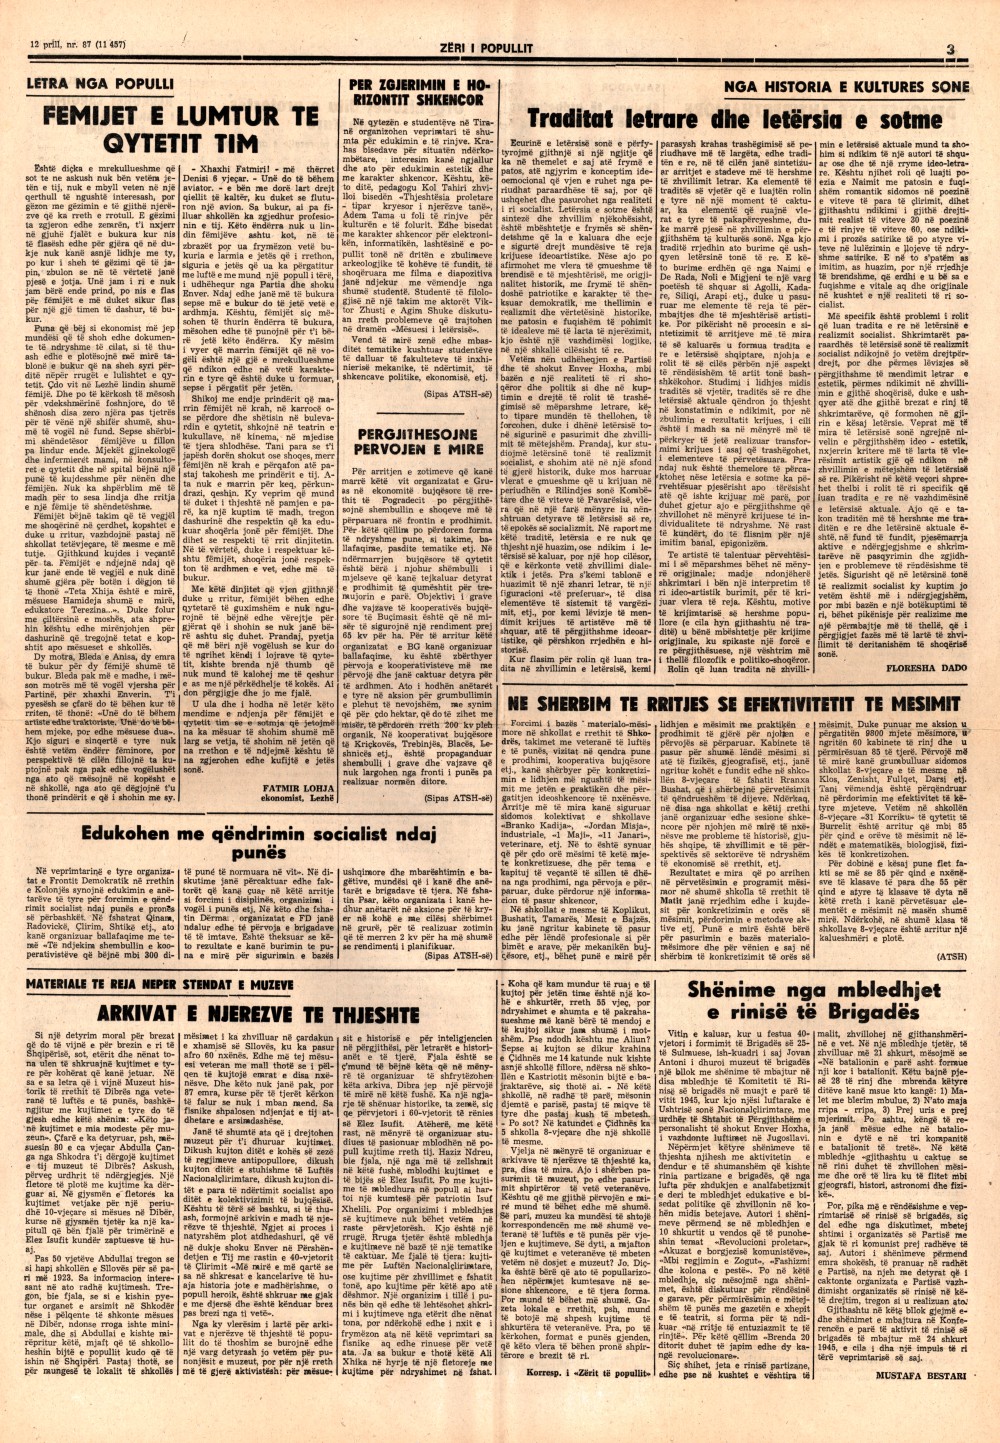 Газета "Зери и популлит" от 12 апреля 1985 года (третья полоса)